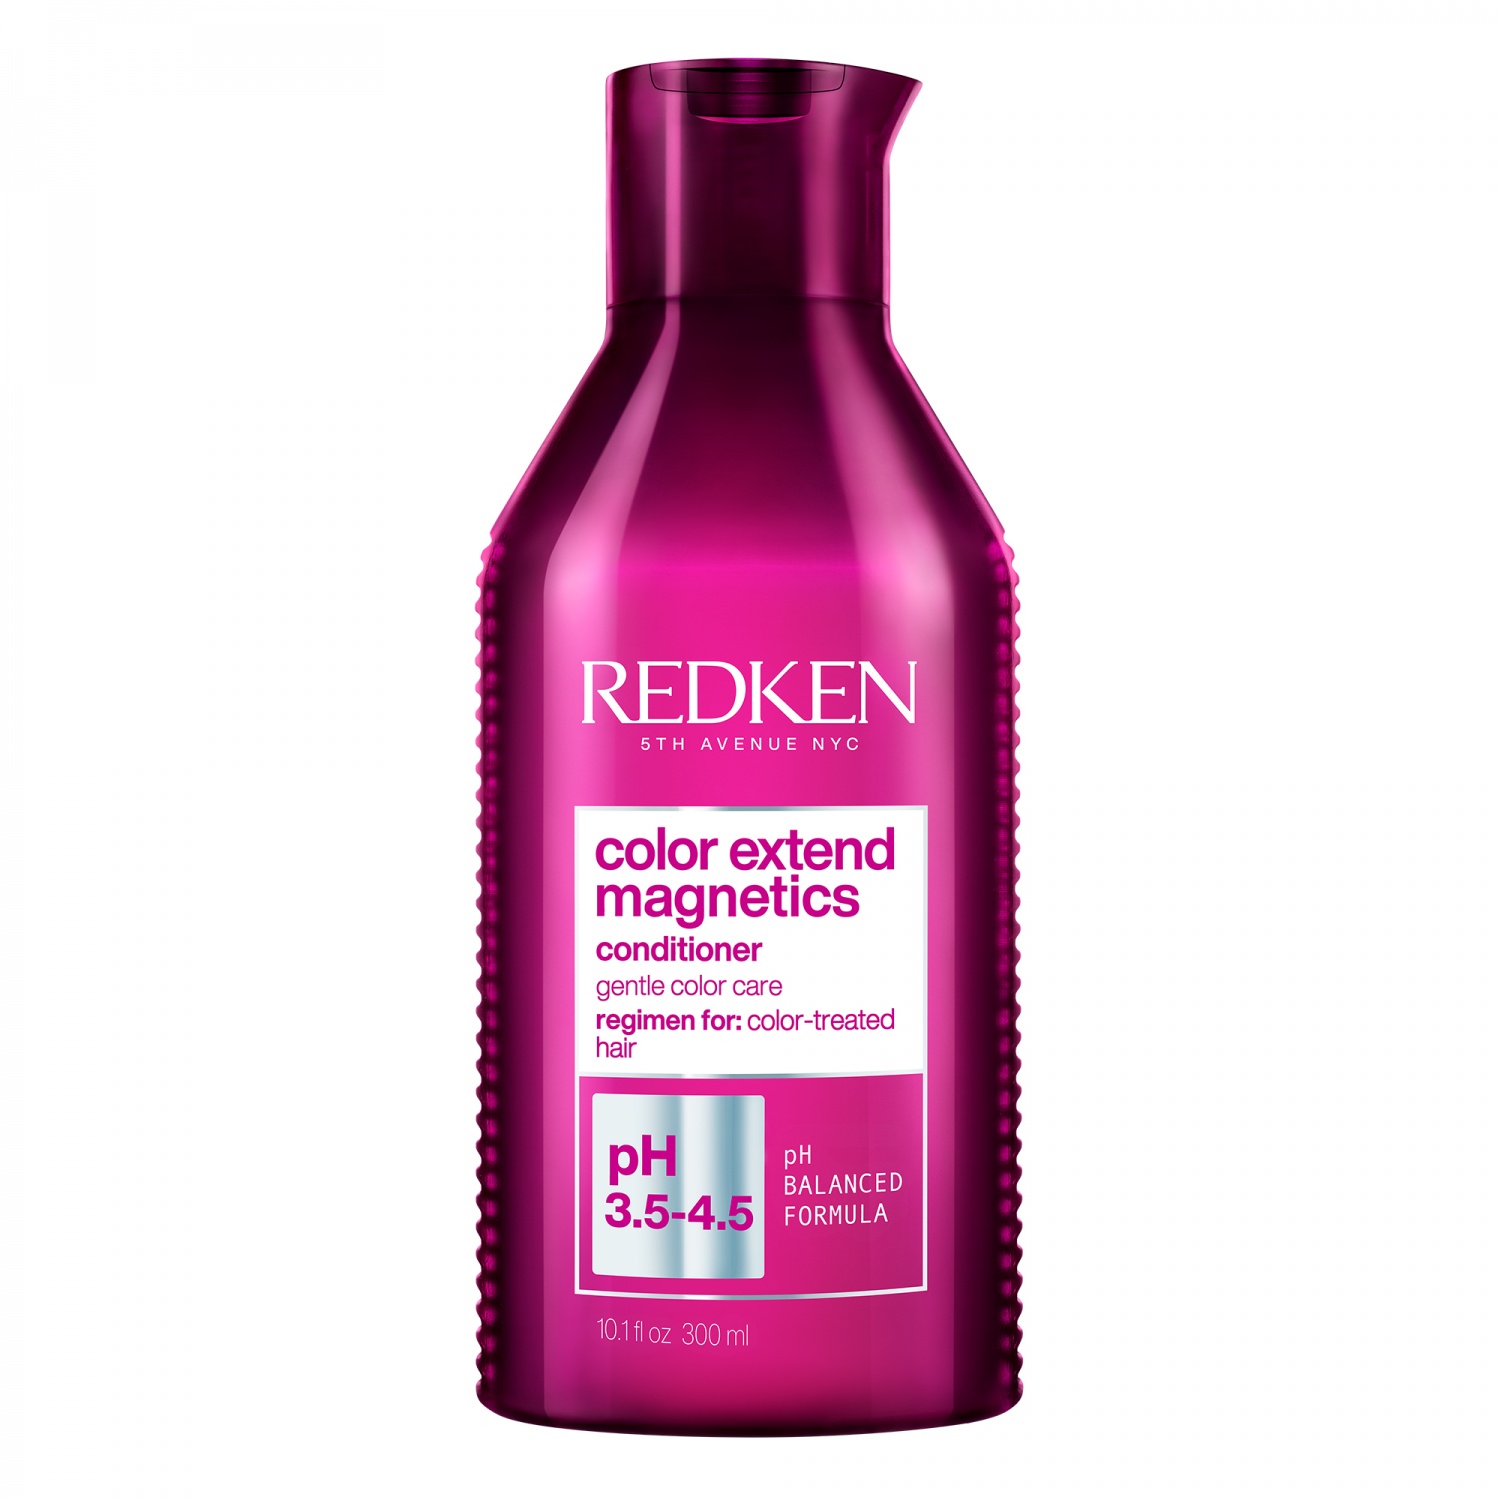 Кондиционер для волос Redken Color Extend Magnetics фото